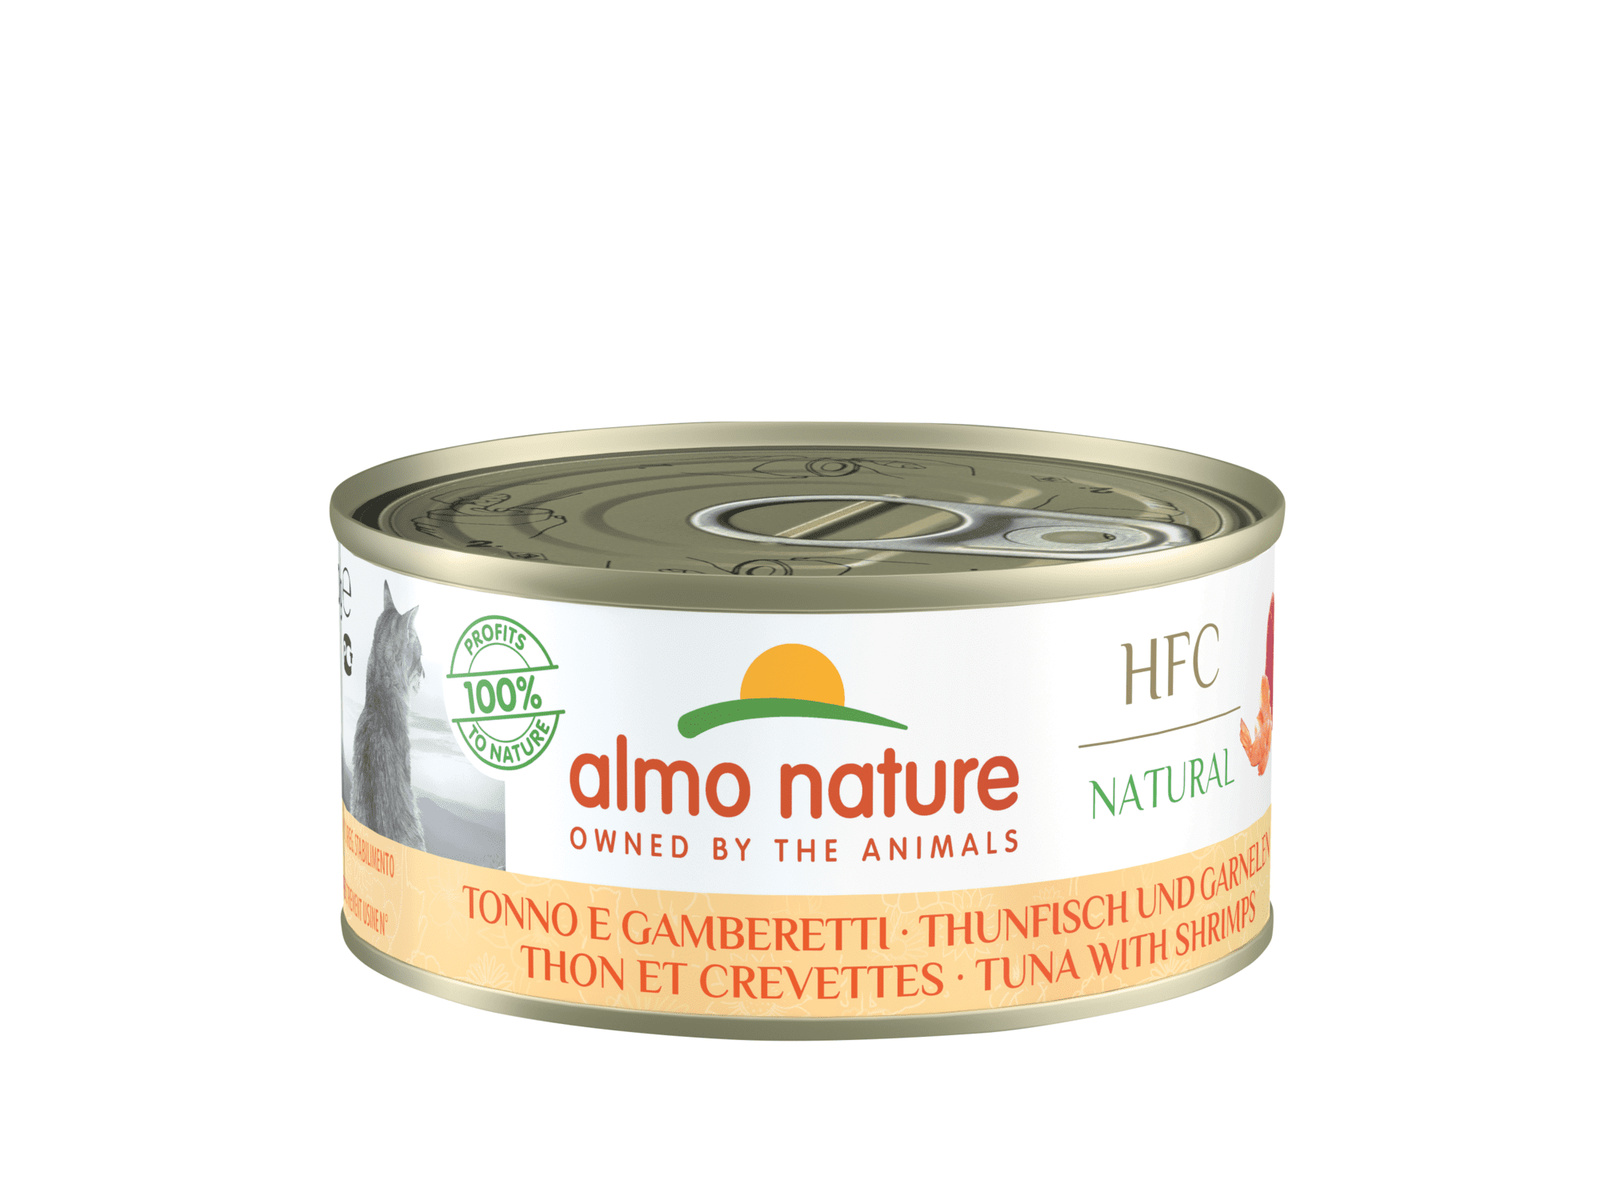 Almo Nature консервы Almo Nature консервы для кошек, с тунцом и креветками, 55% мяса (150 г)